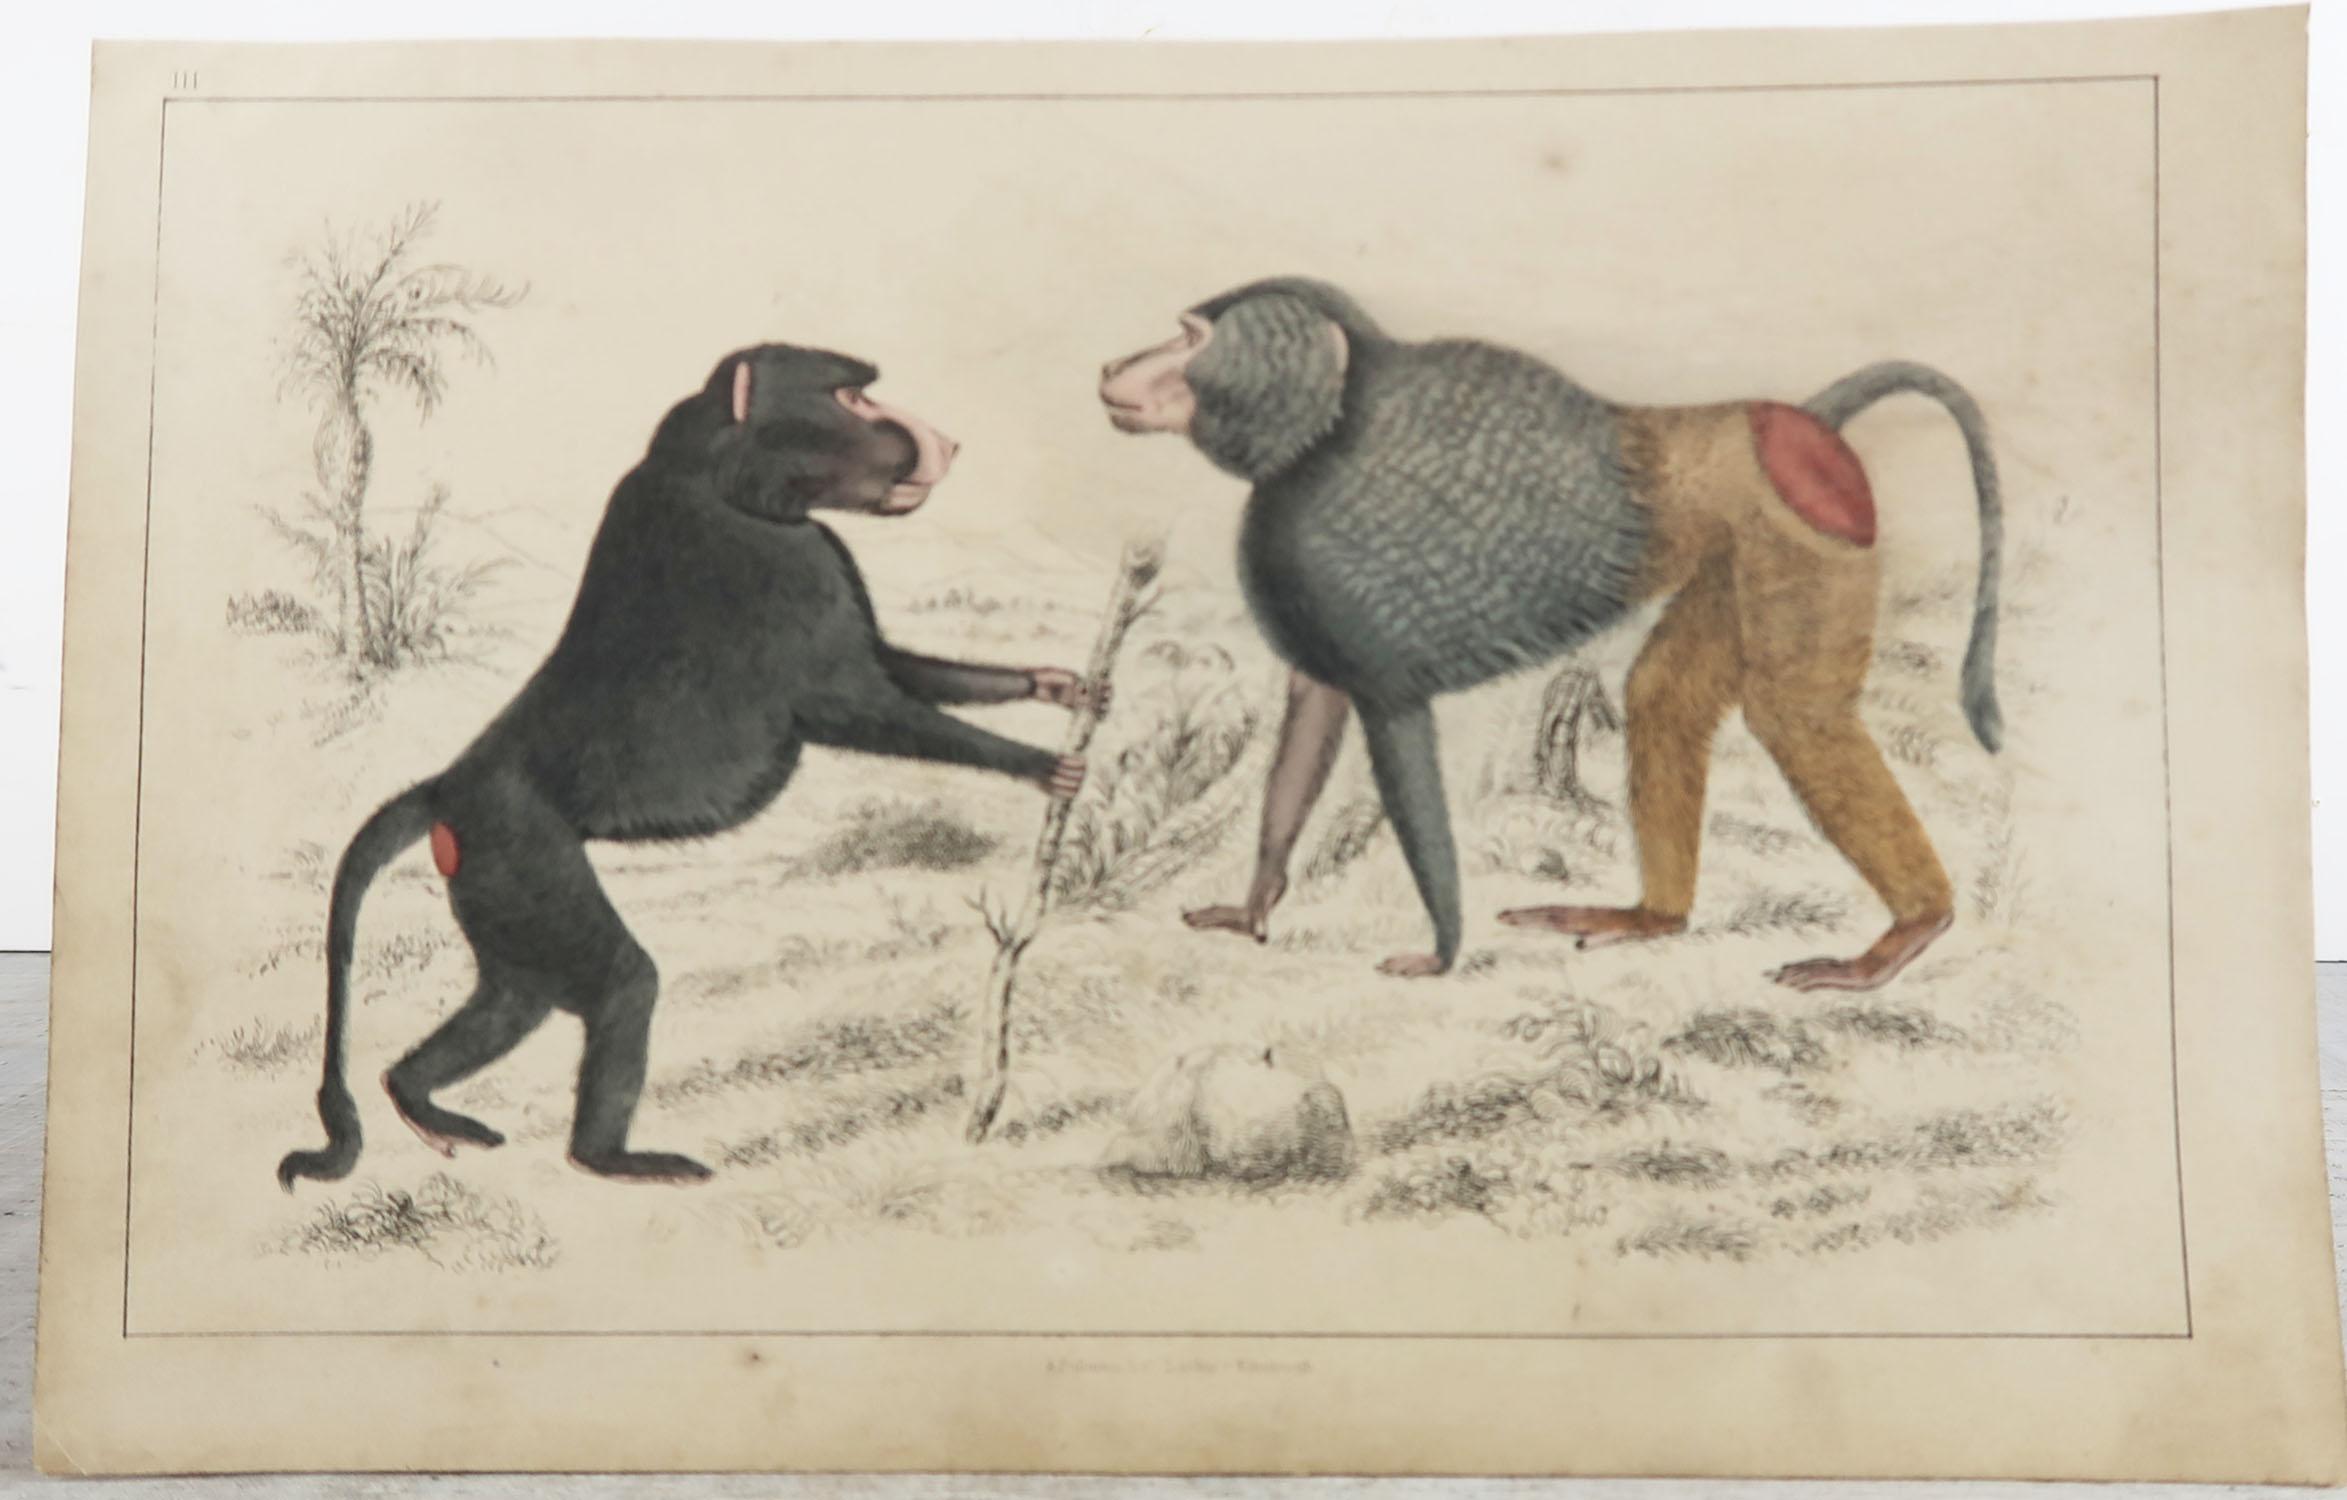 Folk Art Original Antique Print of Baboons, 1847 'Unframed'